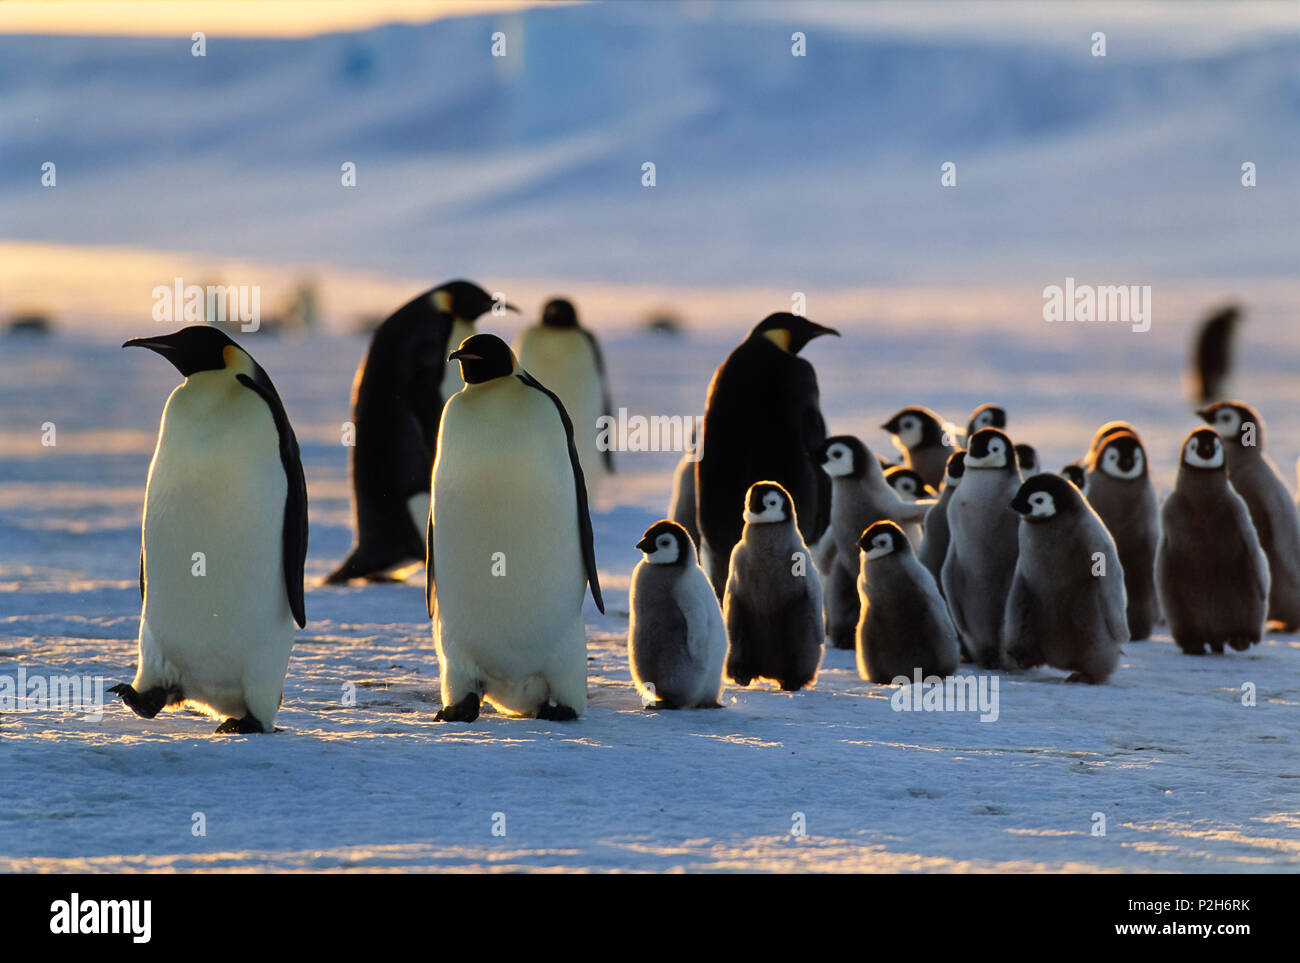 Los pingüinos emperador con pollitos caminando al atardecer, Aptenodytes forsteri, iceshelf, Mar de Weddell, Antártica Foto de stock